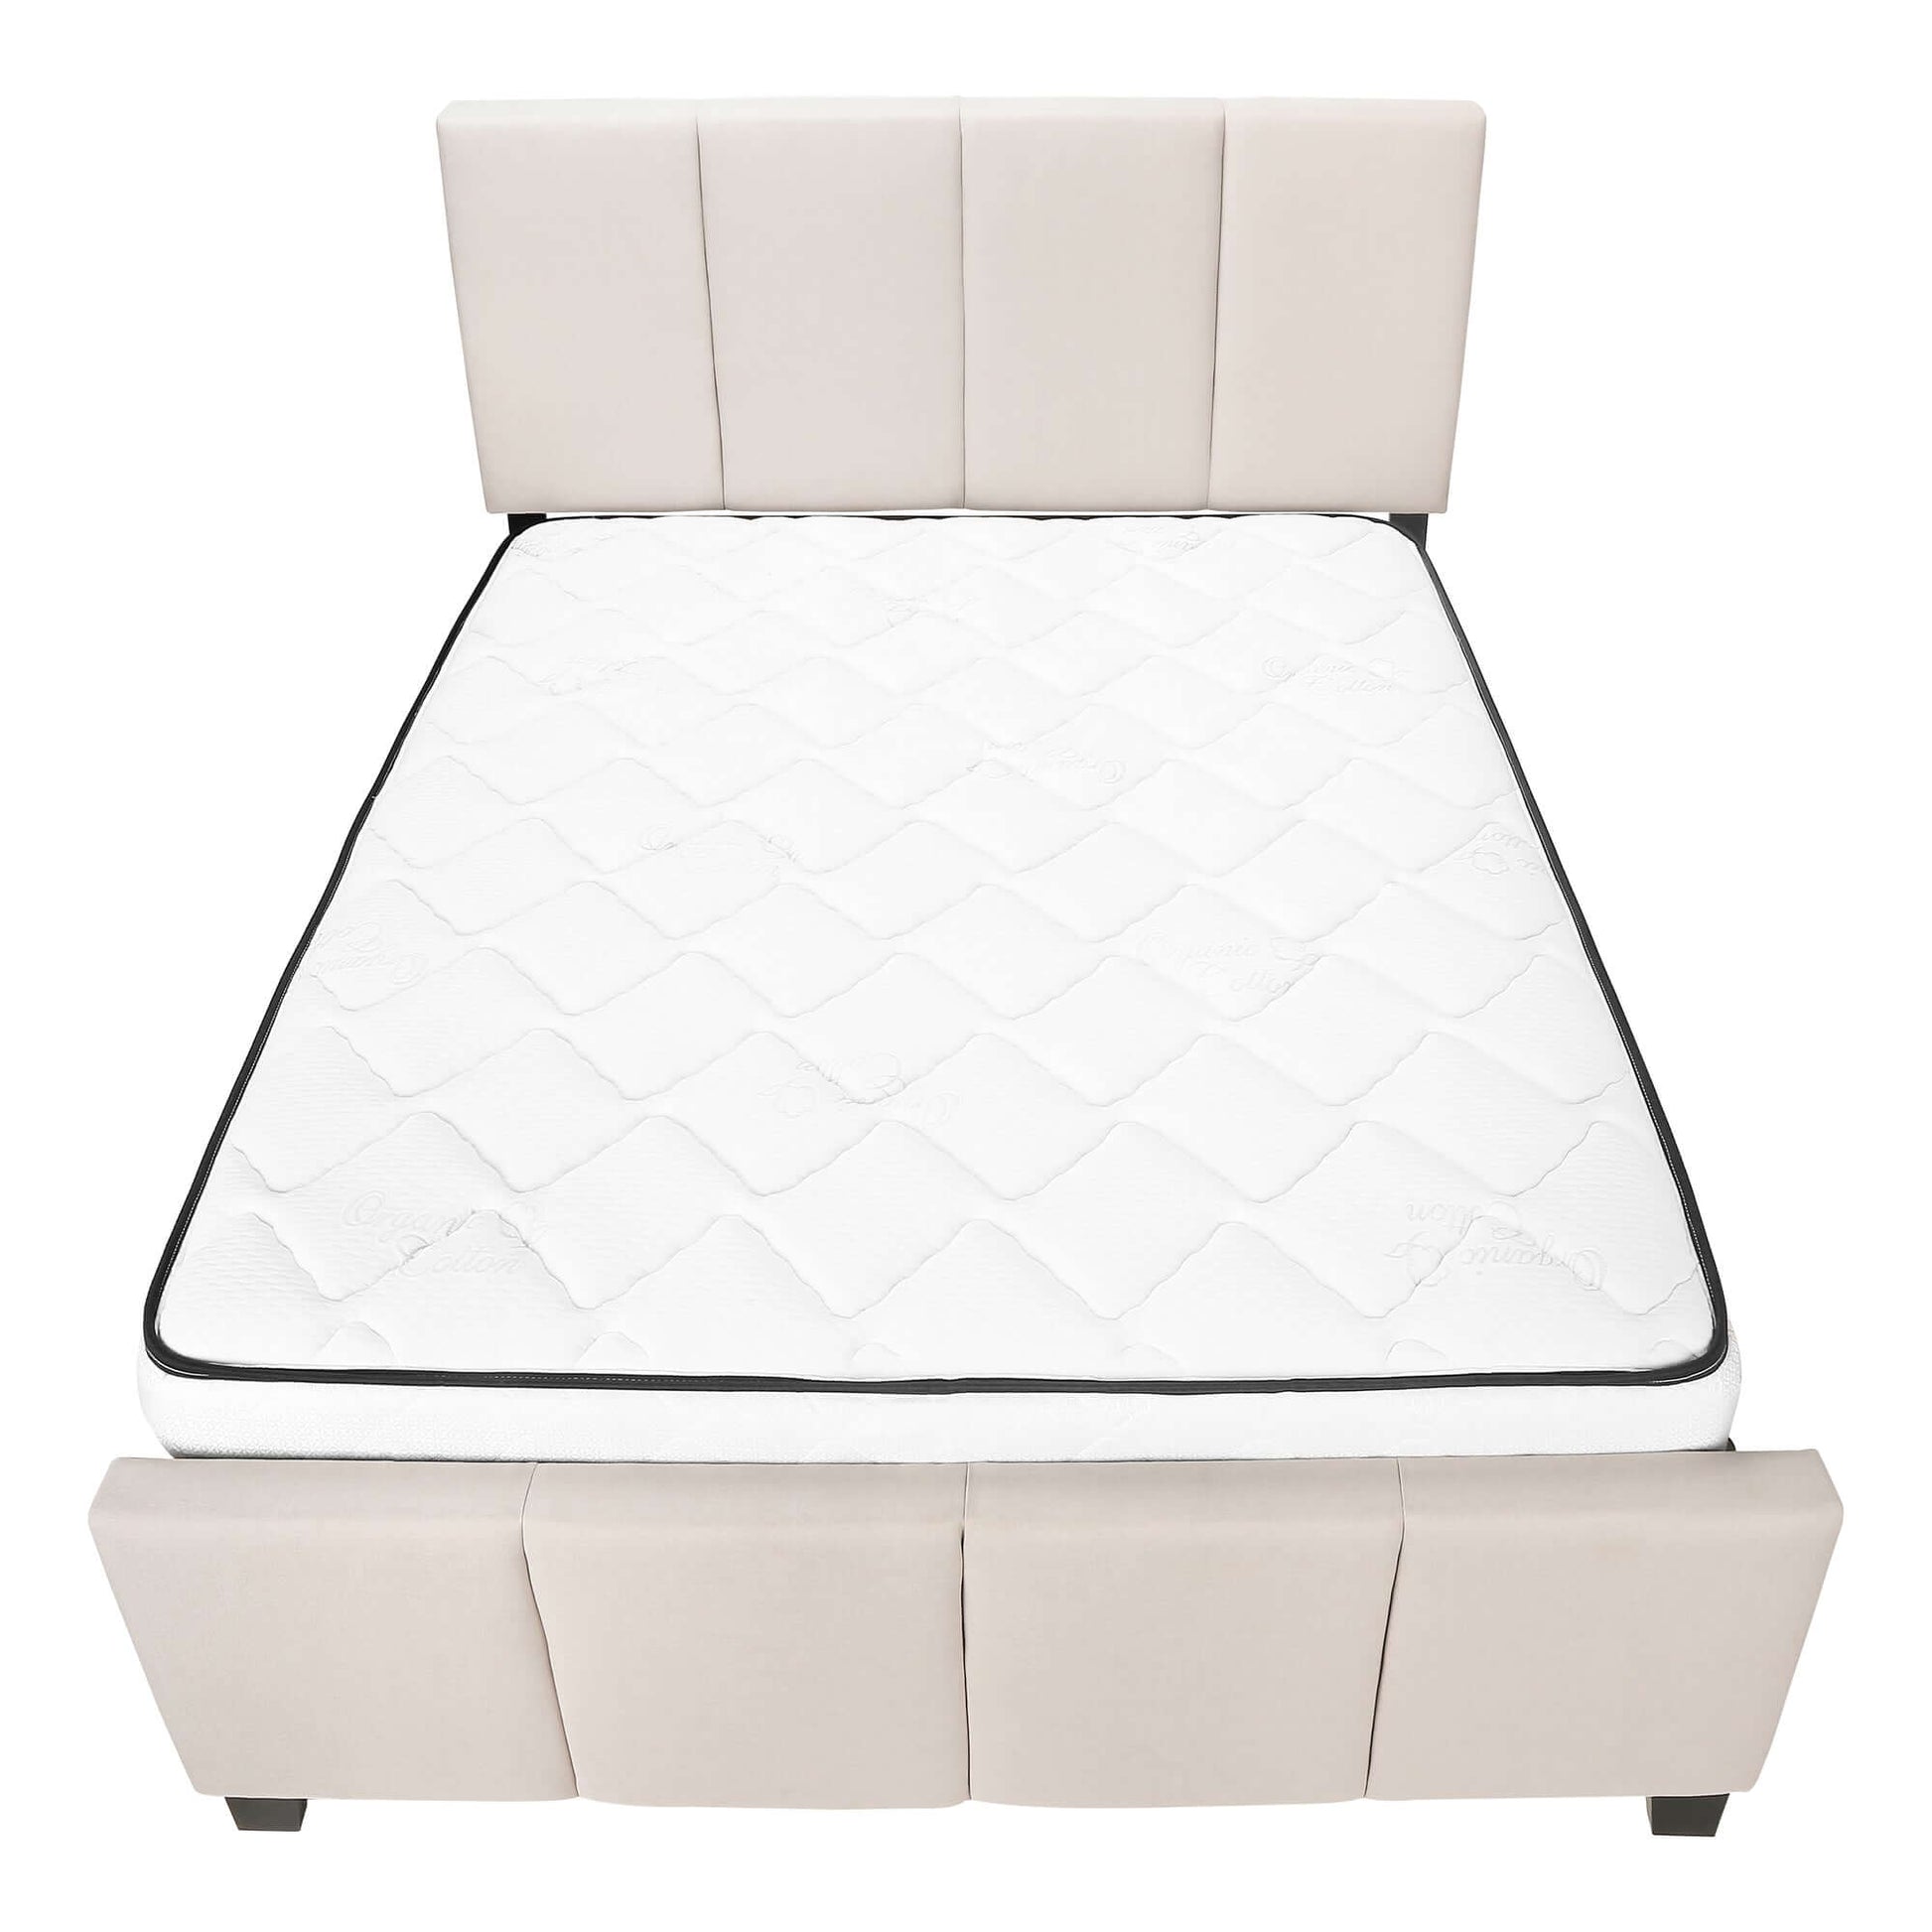 Monarch Specialties - Queen Size Modern Platform Bed Upholstered in Beige Linen Fabric - I 6026Q